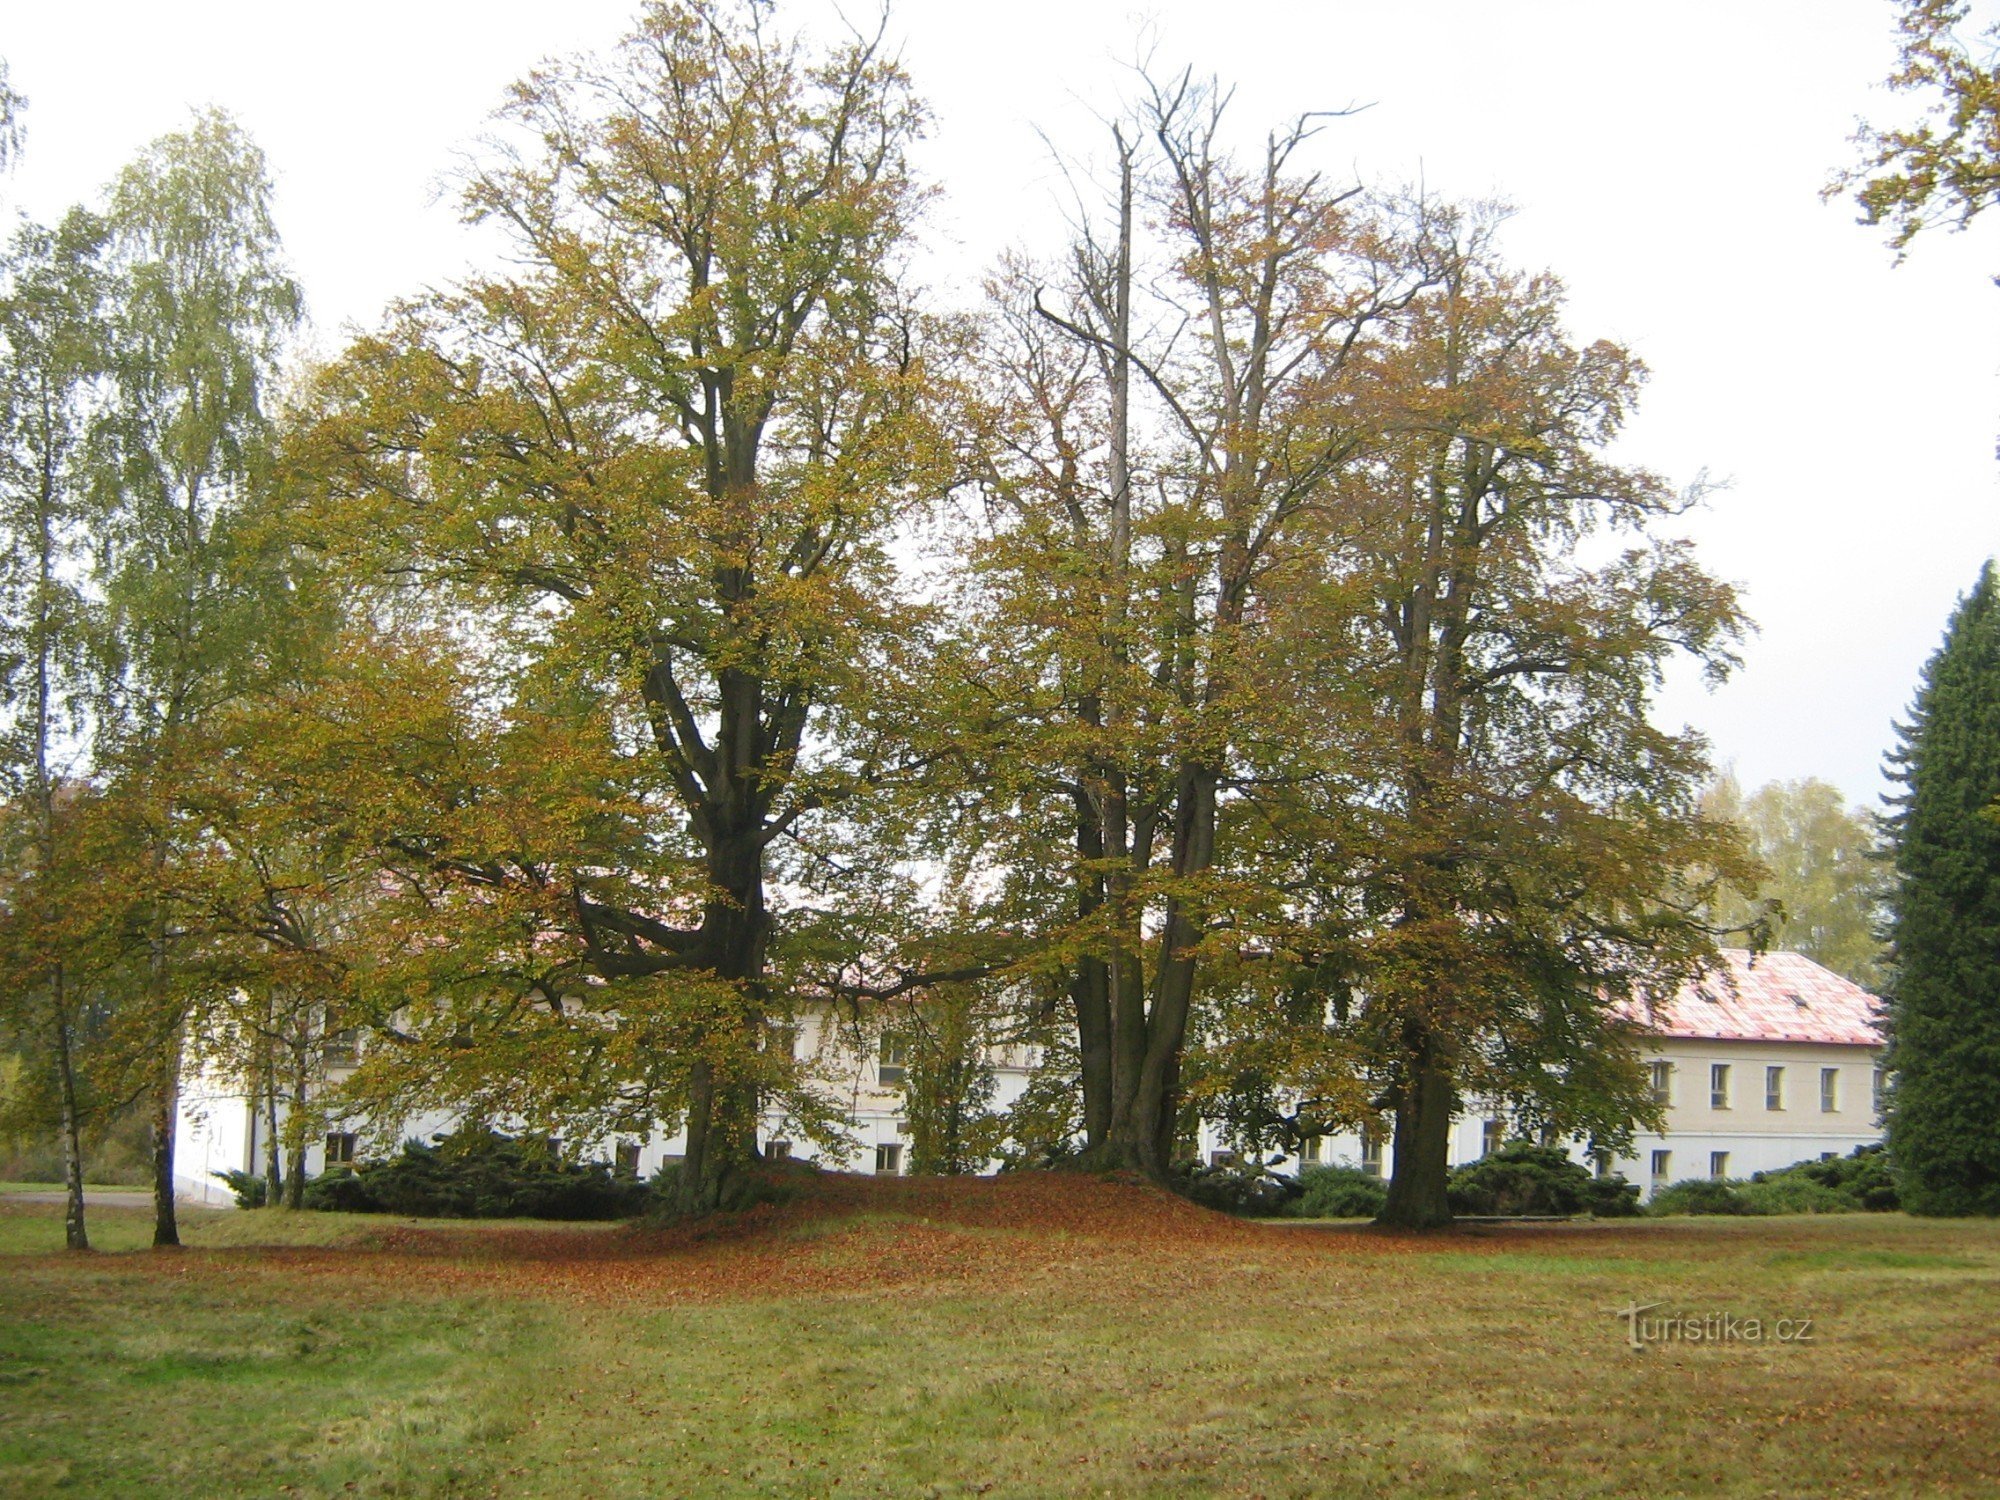 Březina - park and castle